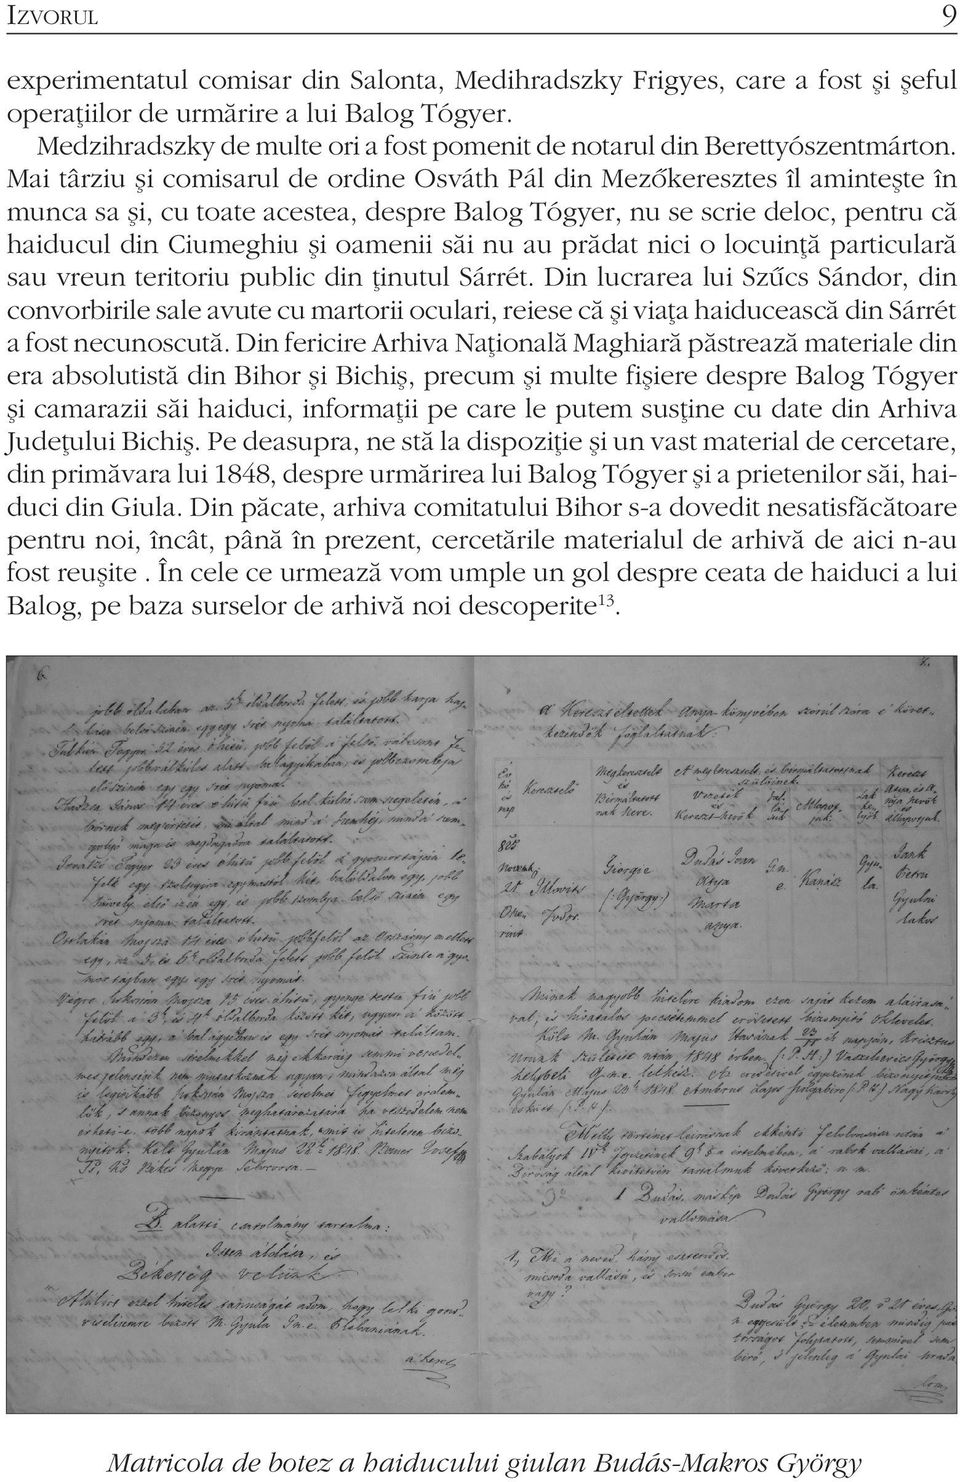 Mai târziu şi comisarul de ordine Osváth Pál din Mezőkeresztes îl aminteşte în munca sa şi, cu toate acestea, despre Balog Tógyer, nu se scrie deloc, pentru că haiducul din Ciumeghiu şi oamenii săi